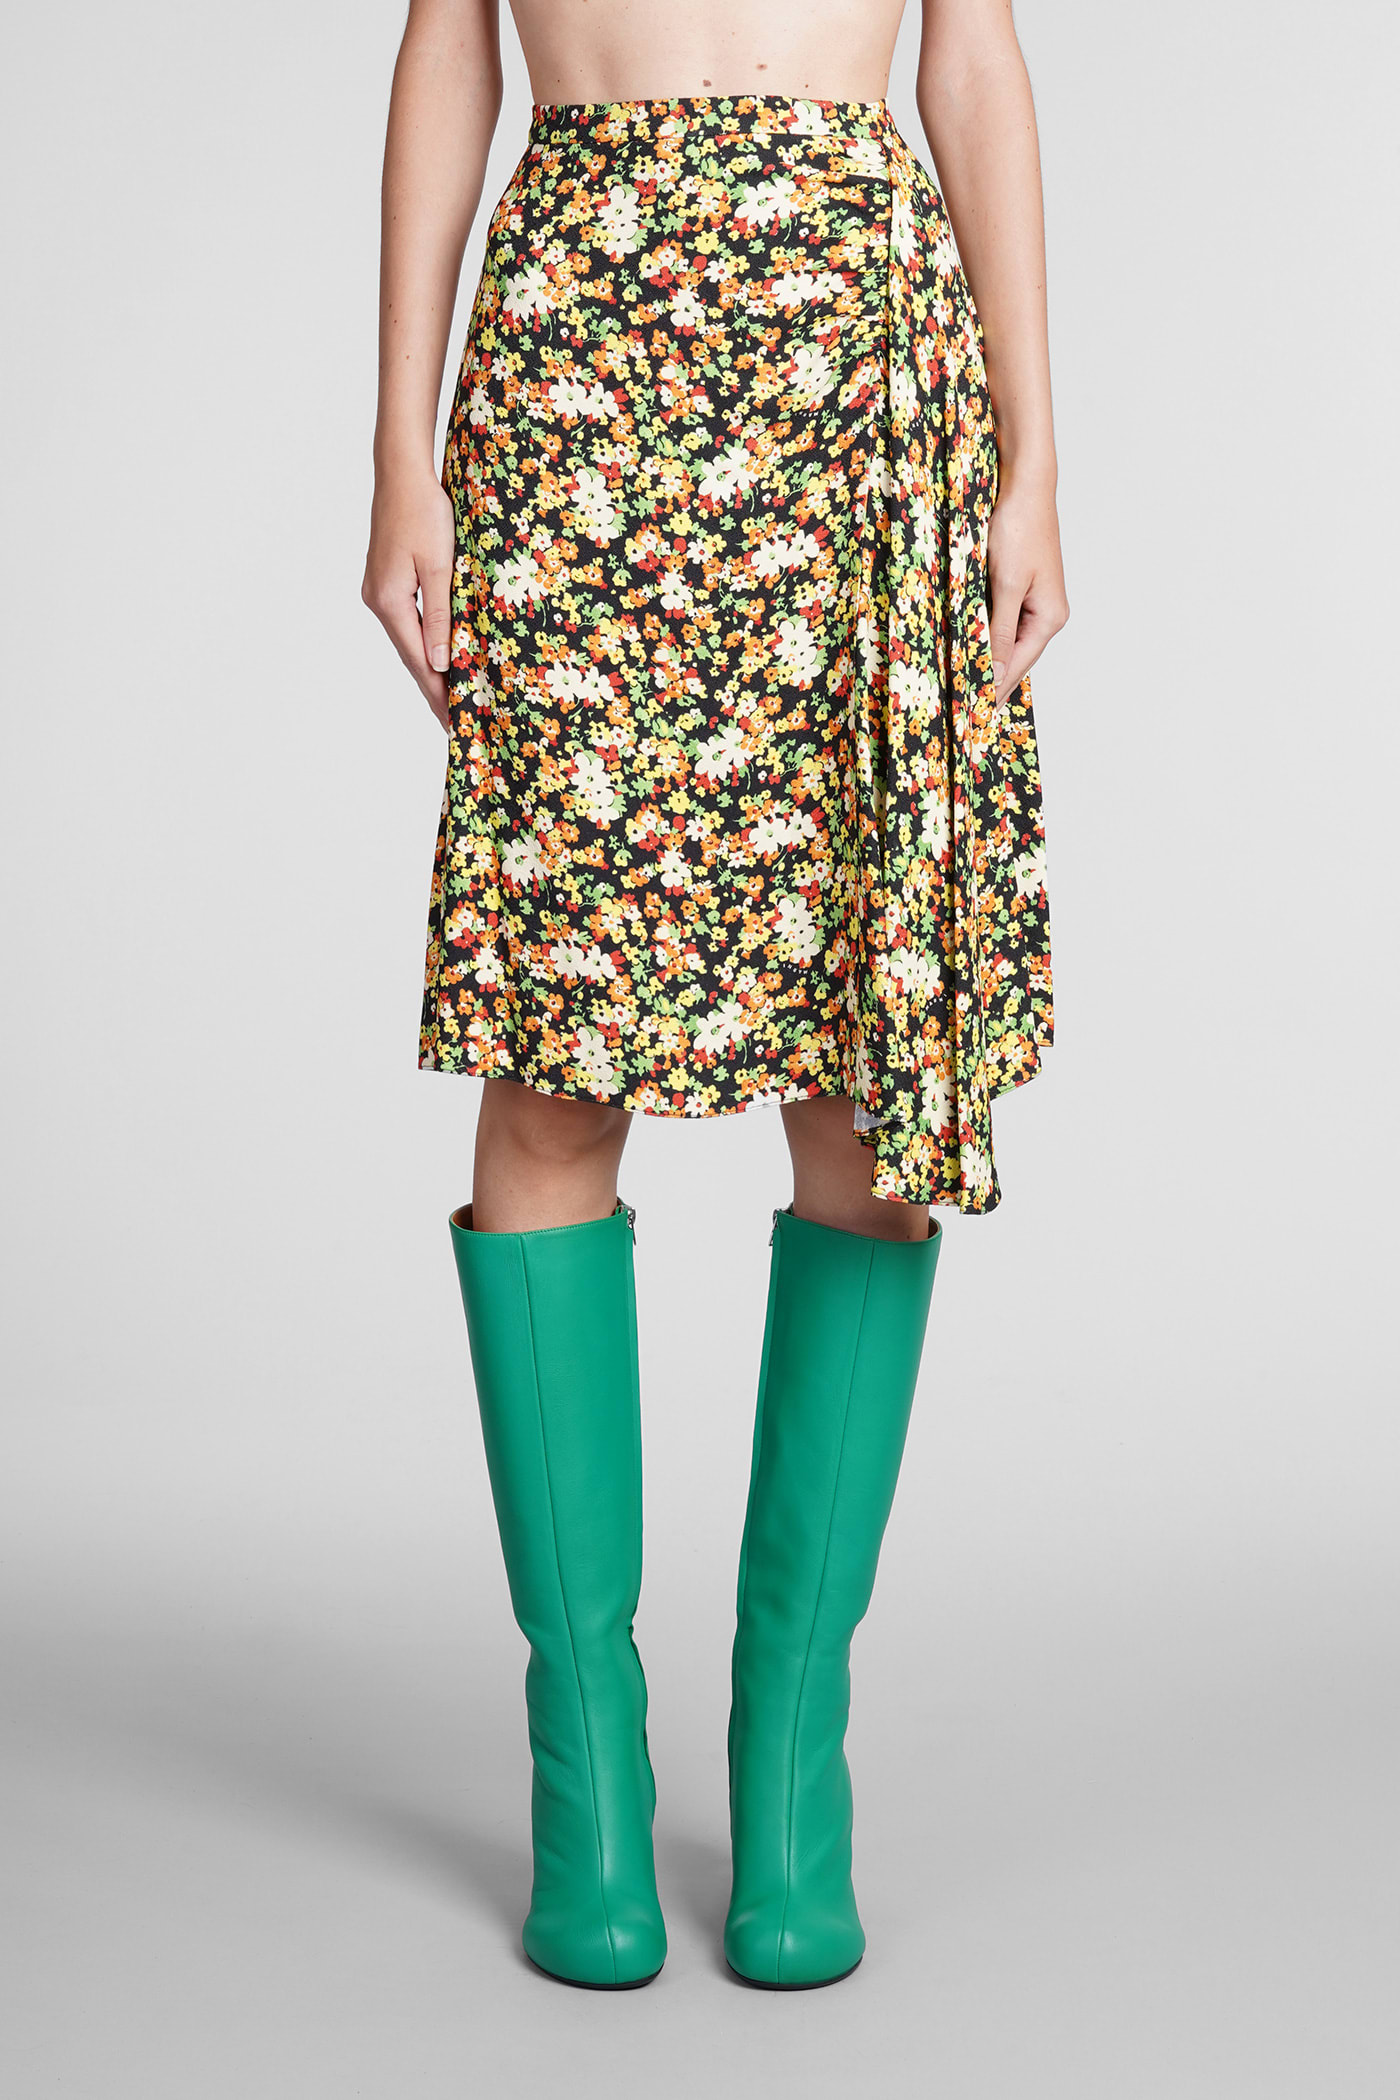 Marni Skirt In Multicolor Viscose